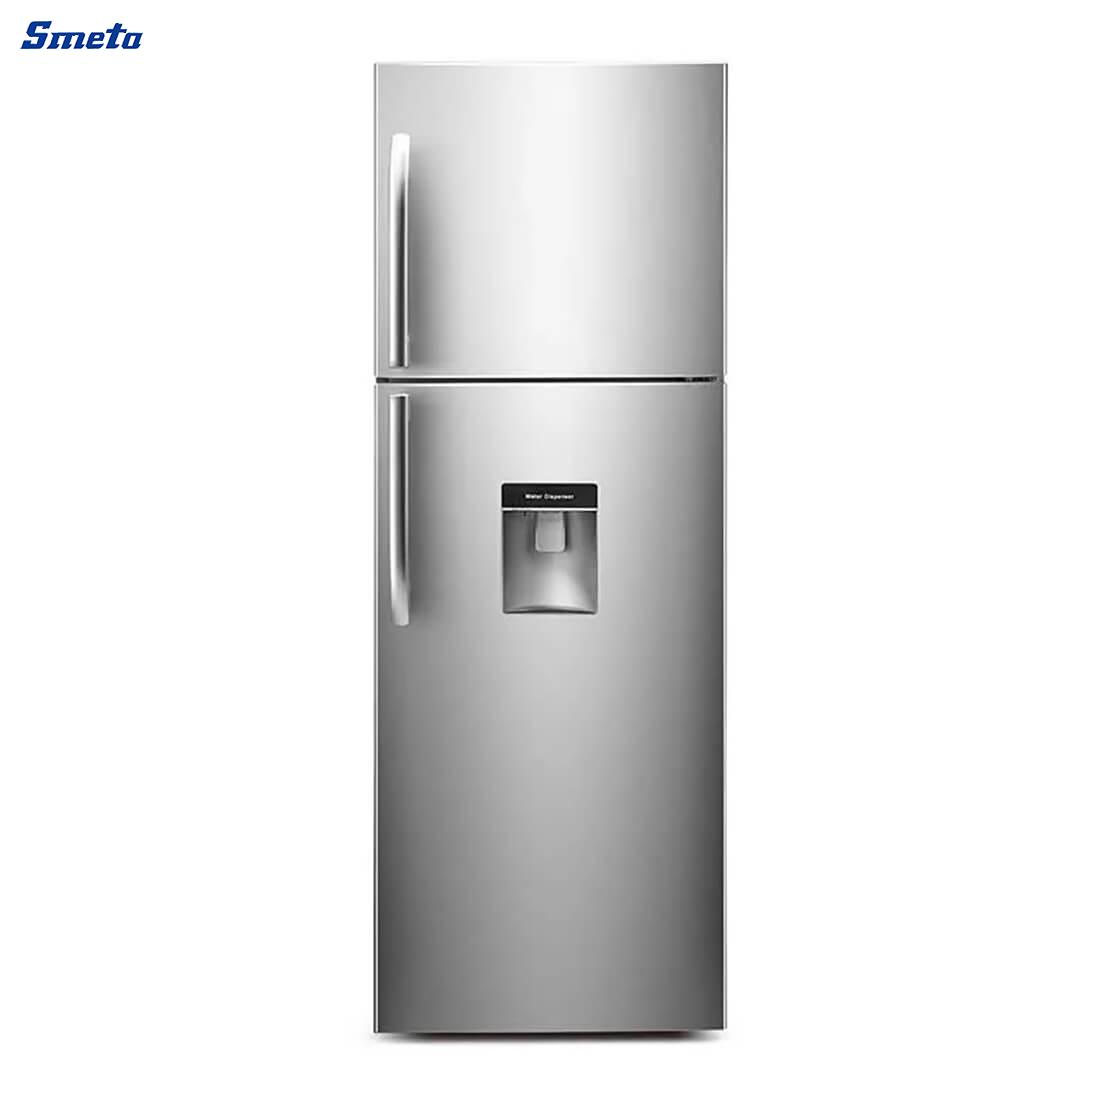 250L /251L double door top freezer refrigerator stainless steel